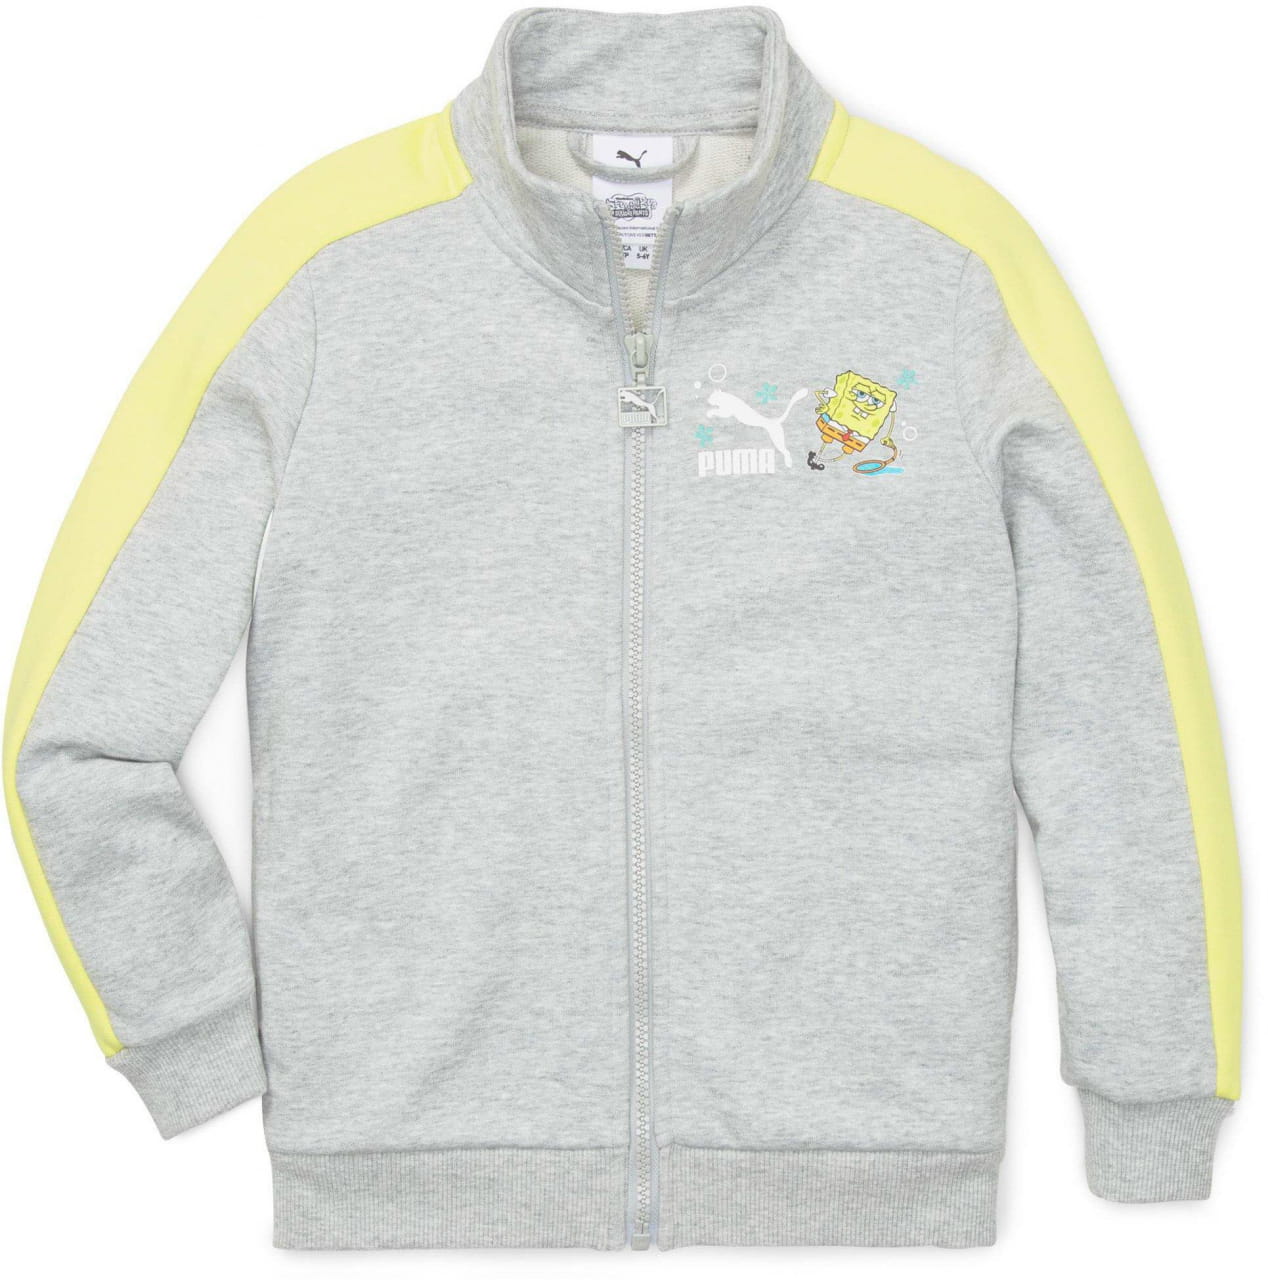 Jachetă sport pentru copii Puma X Spongebob T7 Jacket